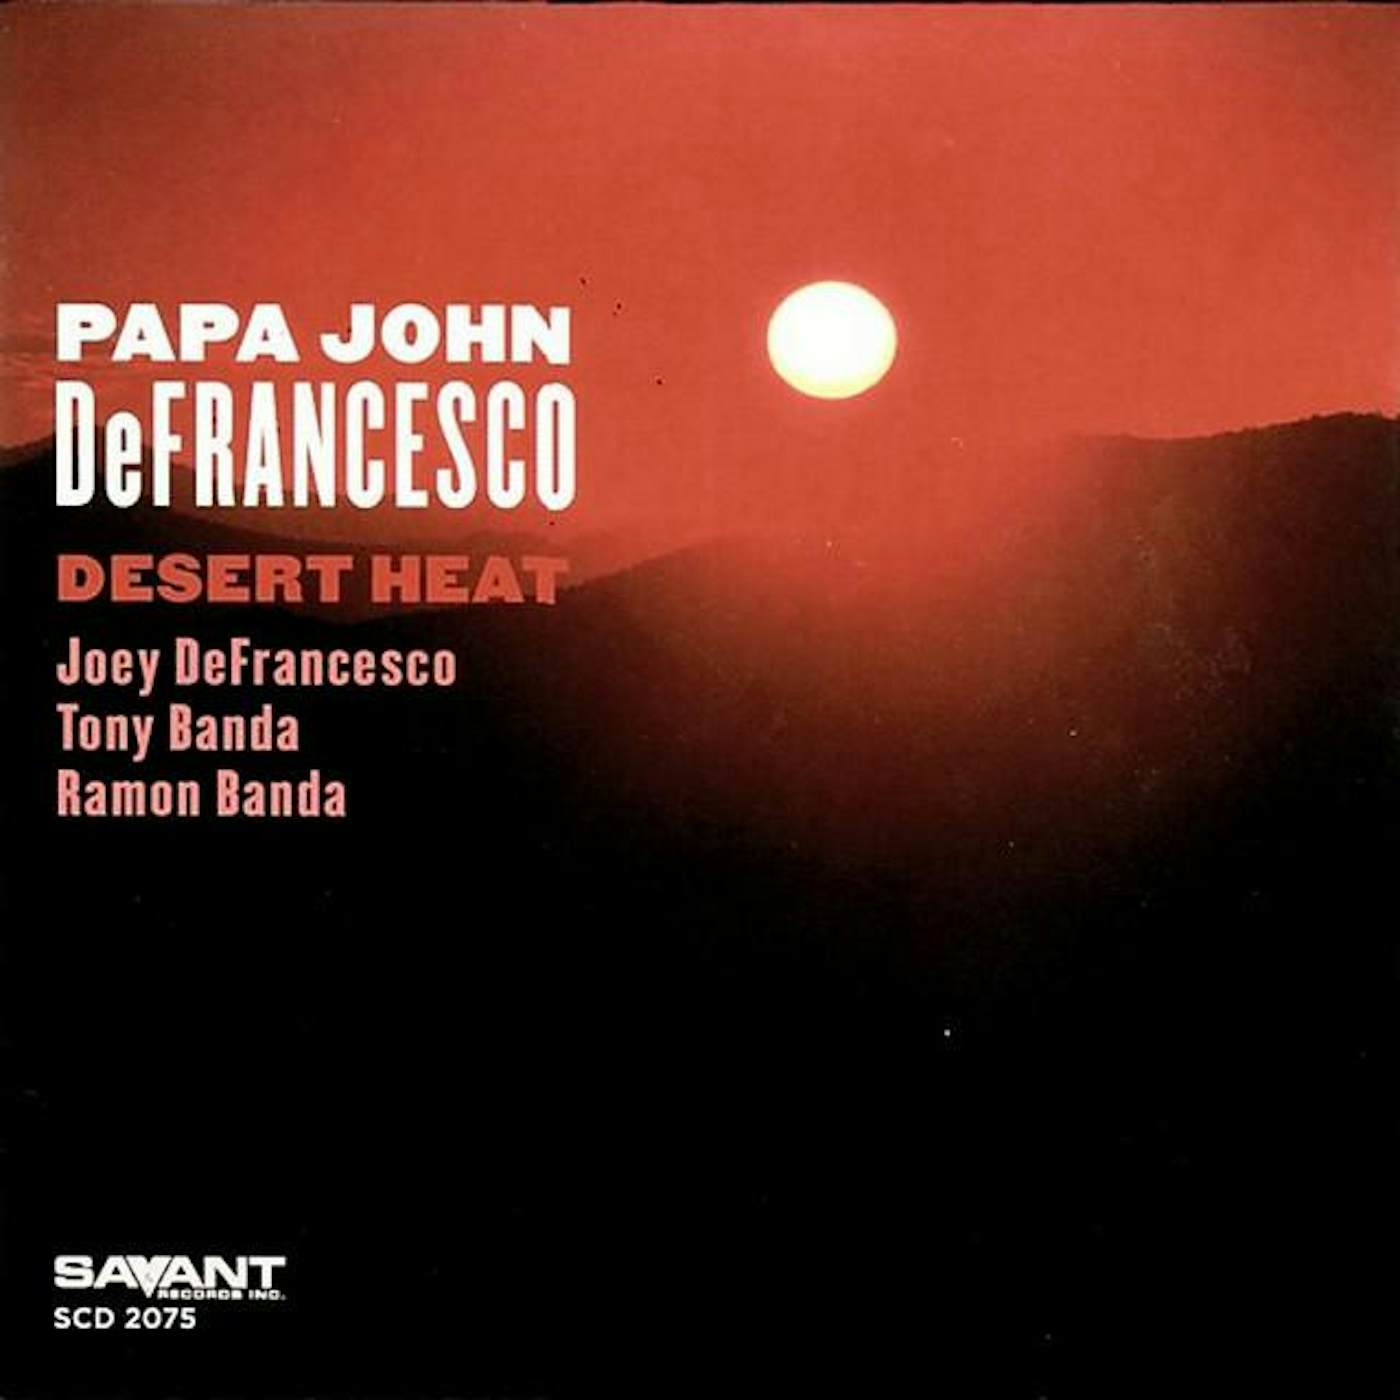 "Papa" John Defrancesco